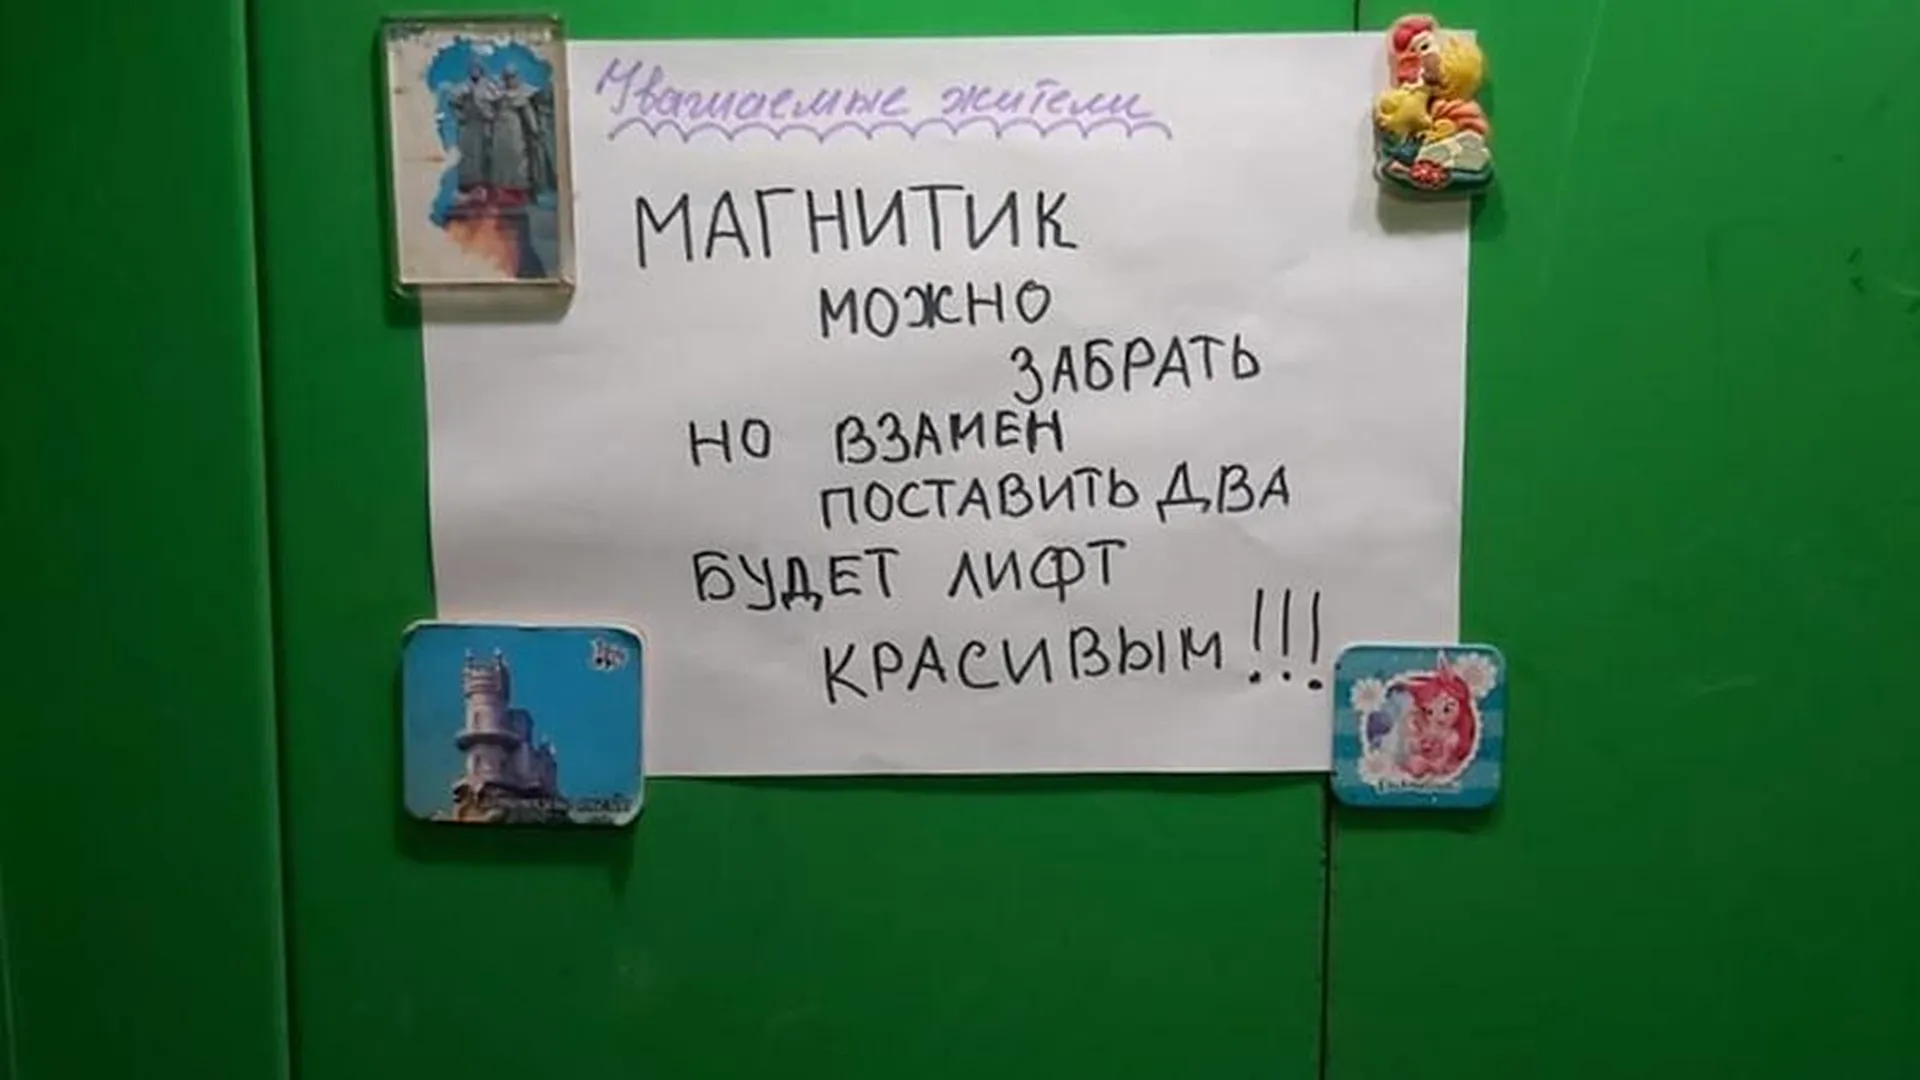 Необычную акцию в лифте устроил студент из Орехово-Зуево, чтобы порадовать соседей